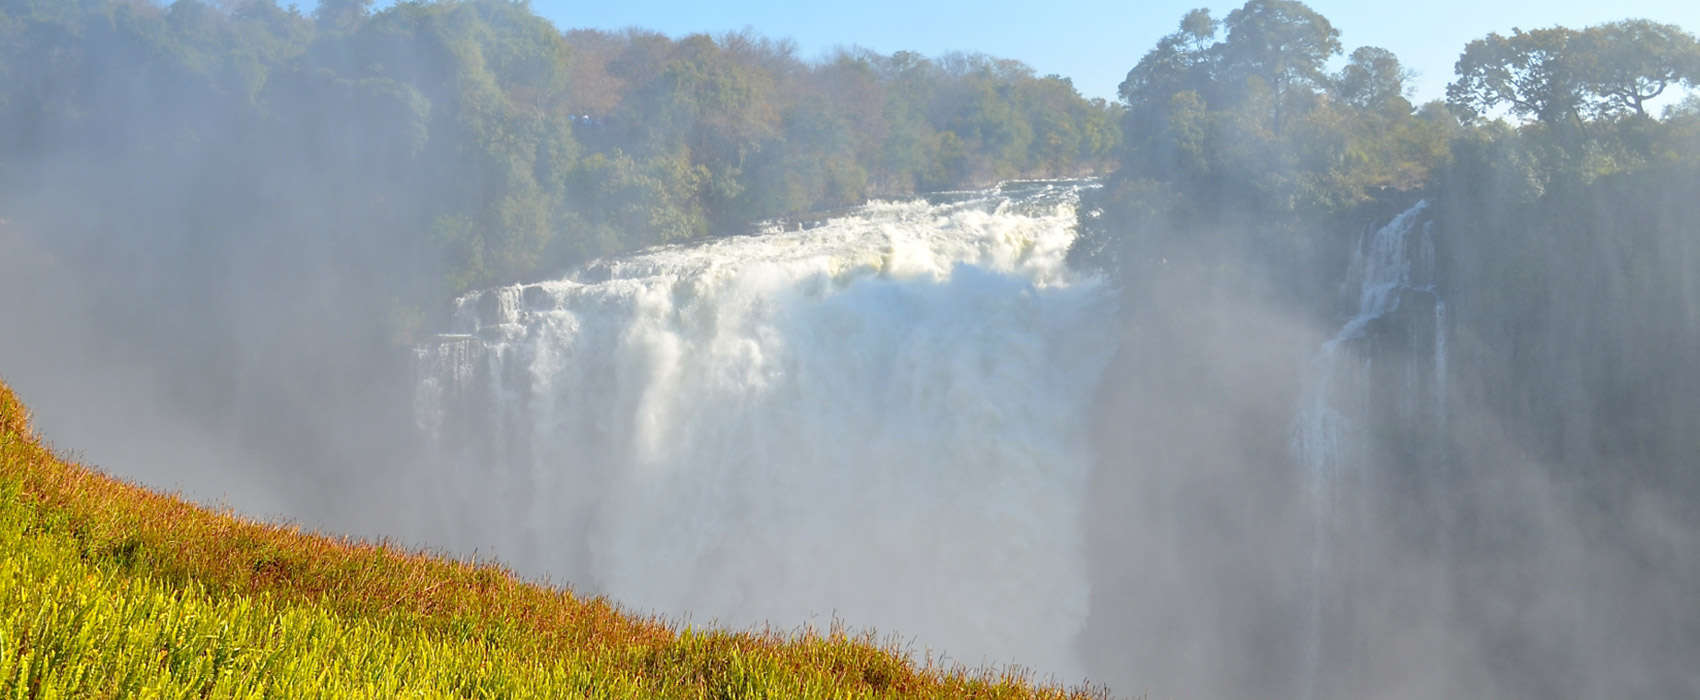 African Victoria Falls Safari falls